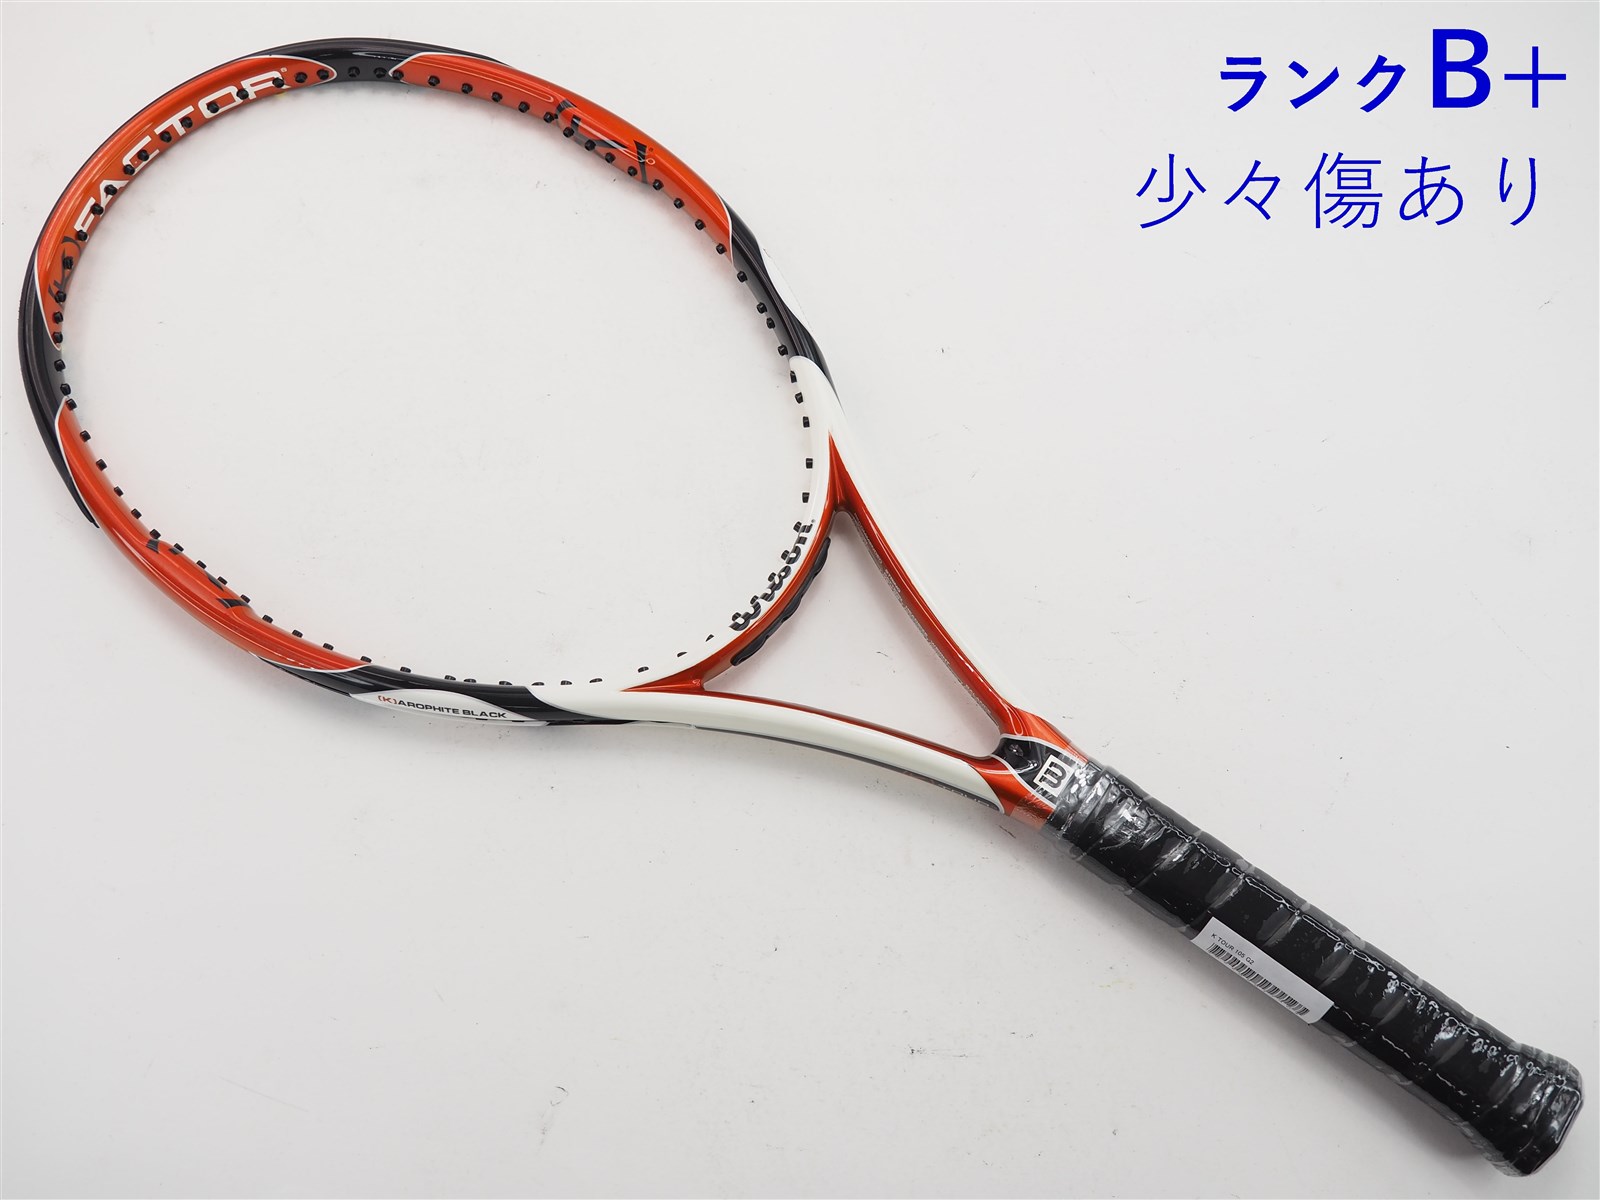 テニスラケット ウィルソン K ツアー 105【トップバンパー割れ有り ...